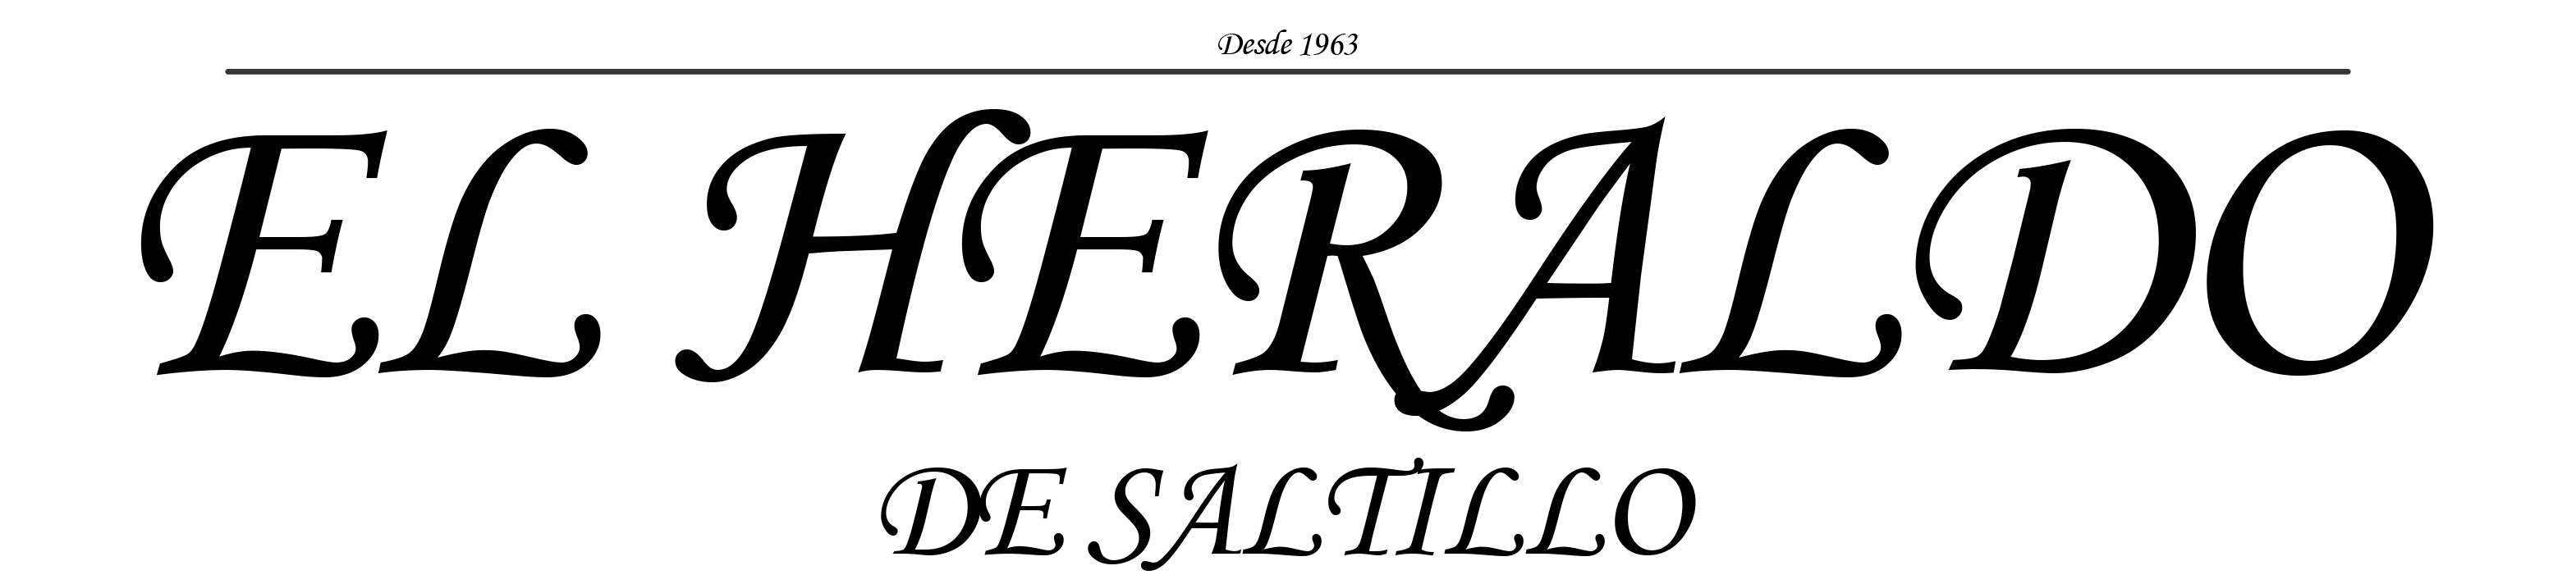 El Heraldo de Saltillo | Periodico de mayor tradicion en la ciudad de  Saltillo, Coahuila, México